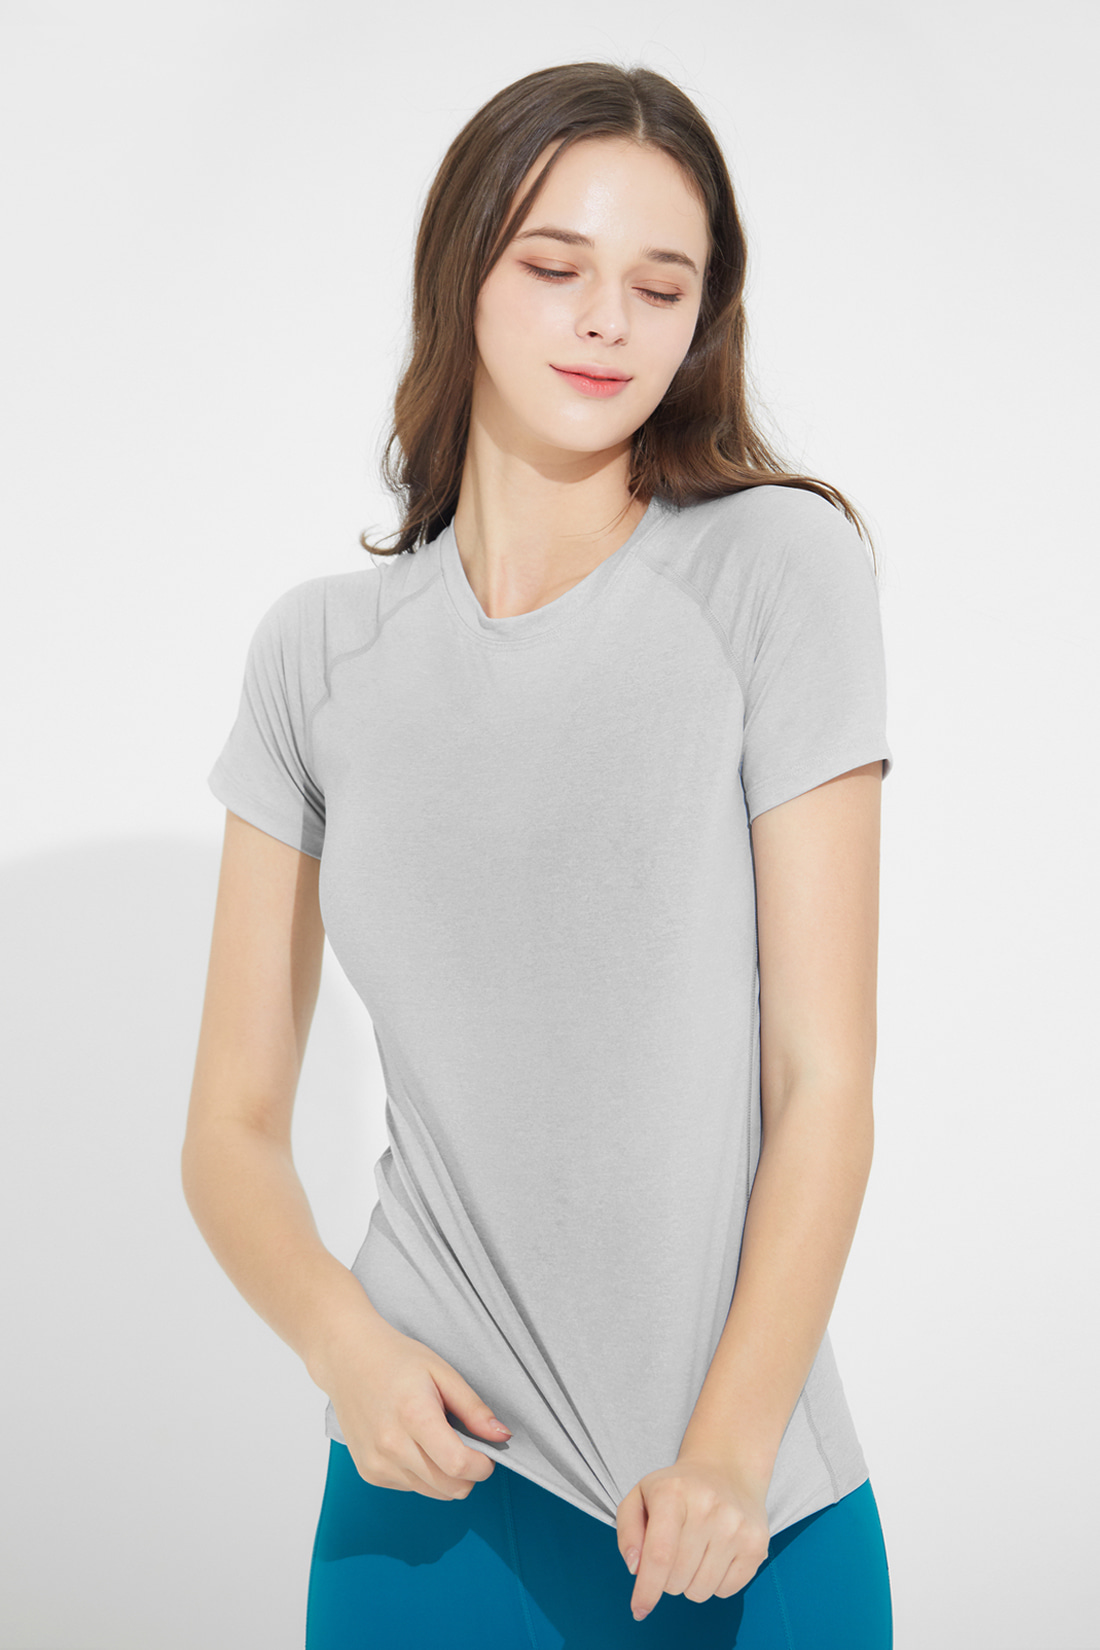 슬릭 티셔츠 라이트그레이 Light gray